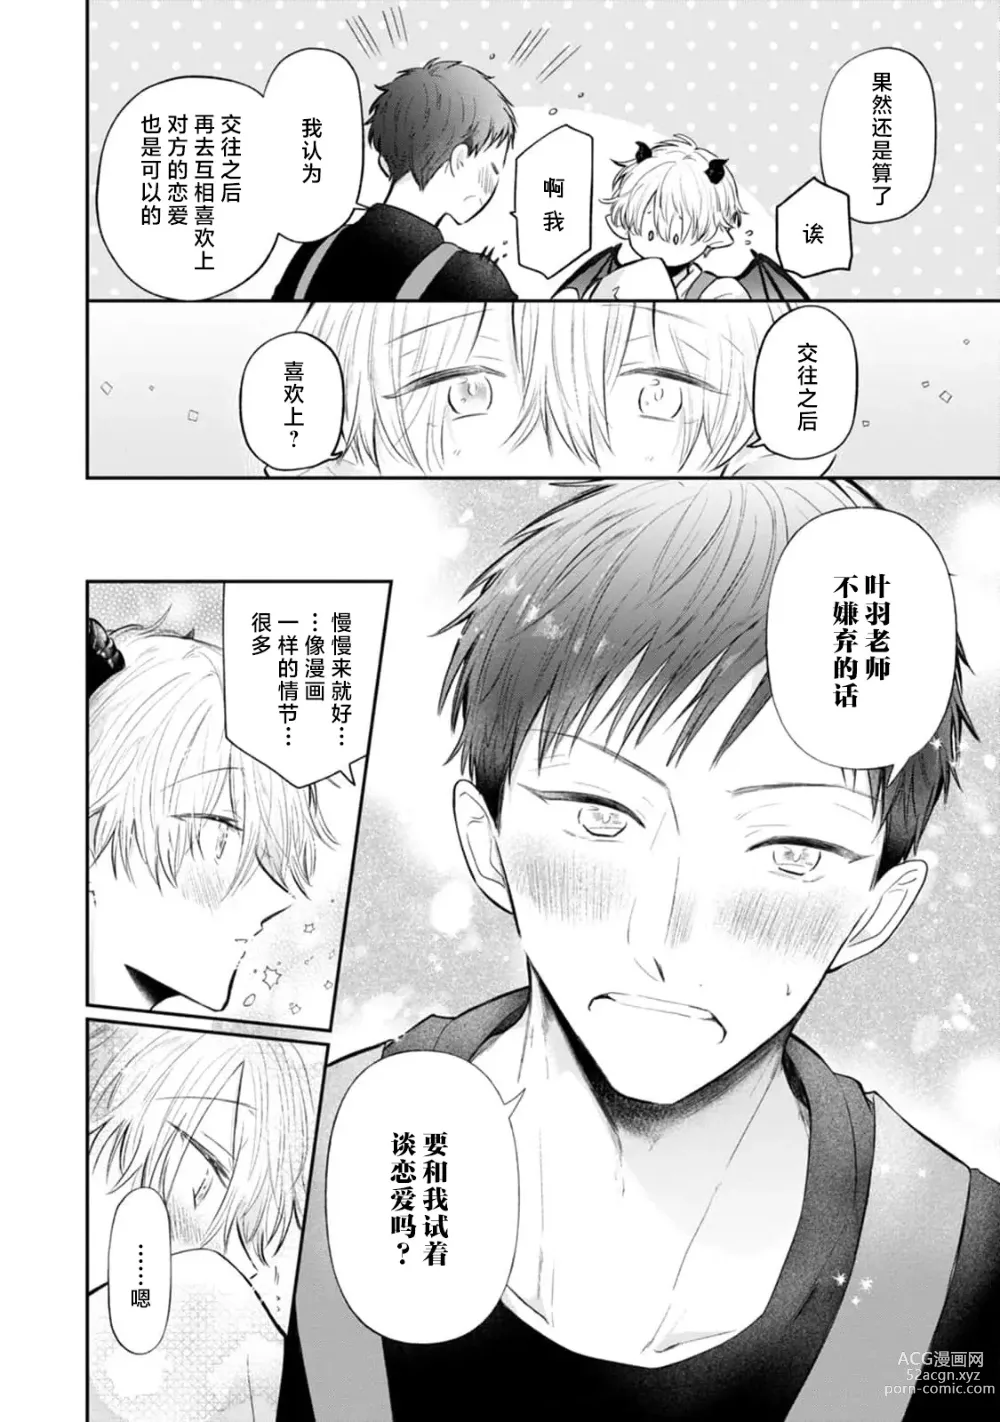 Page 24 of manga 叶羽老师全部是第一次 1-4